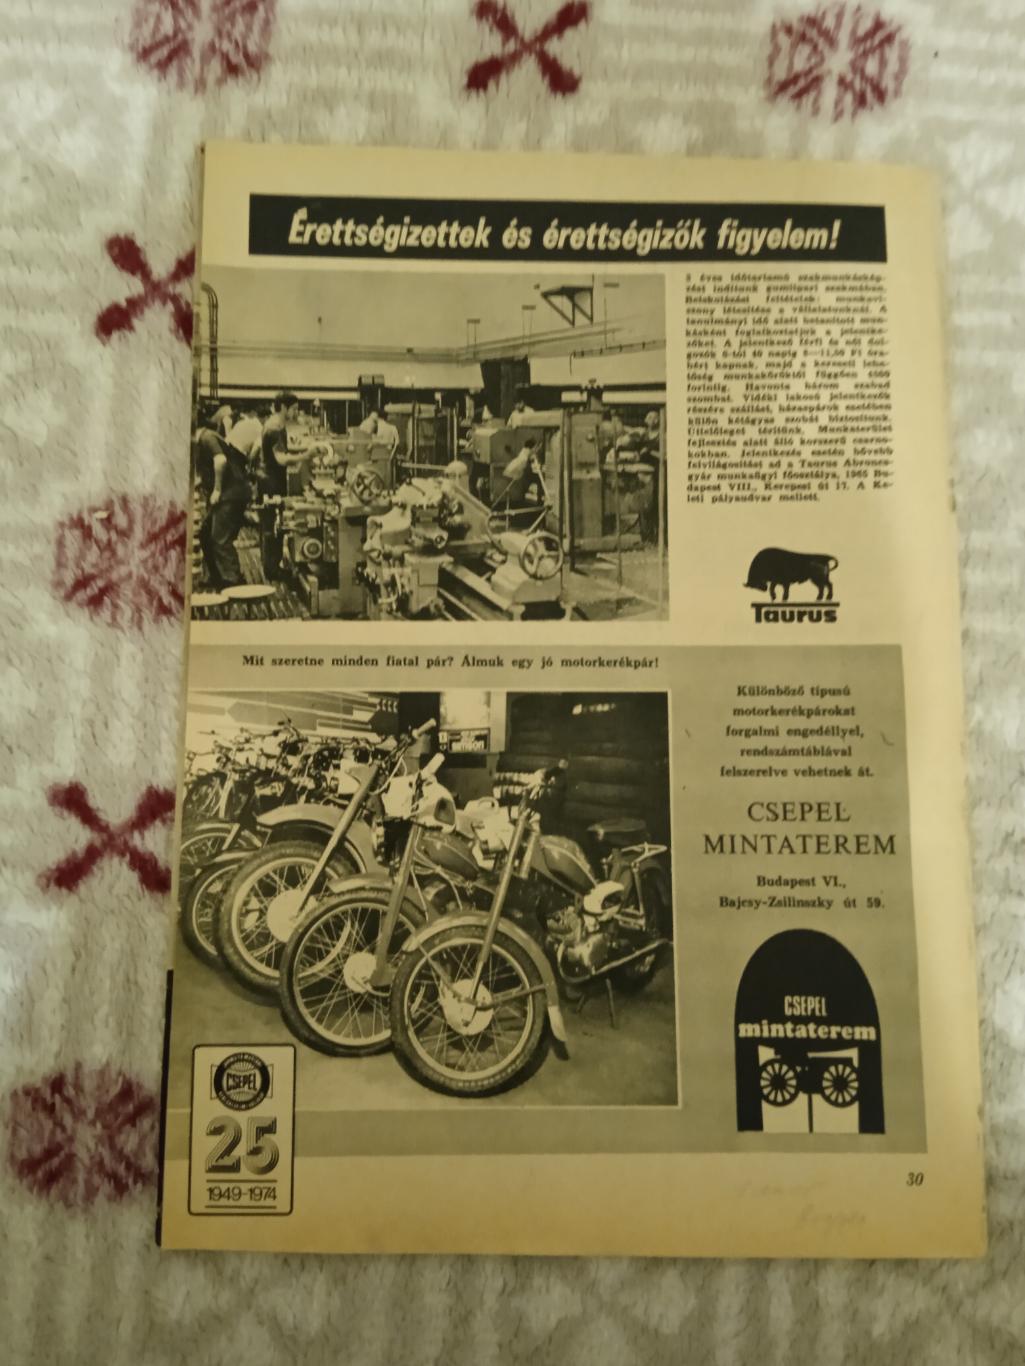 Журнал.Лабдаругаш № 6 1974 г. (Венгрия).(ЧМ 1974). 2